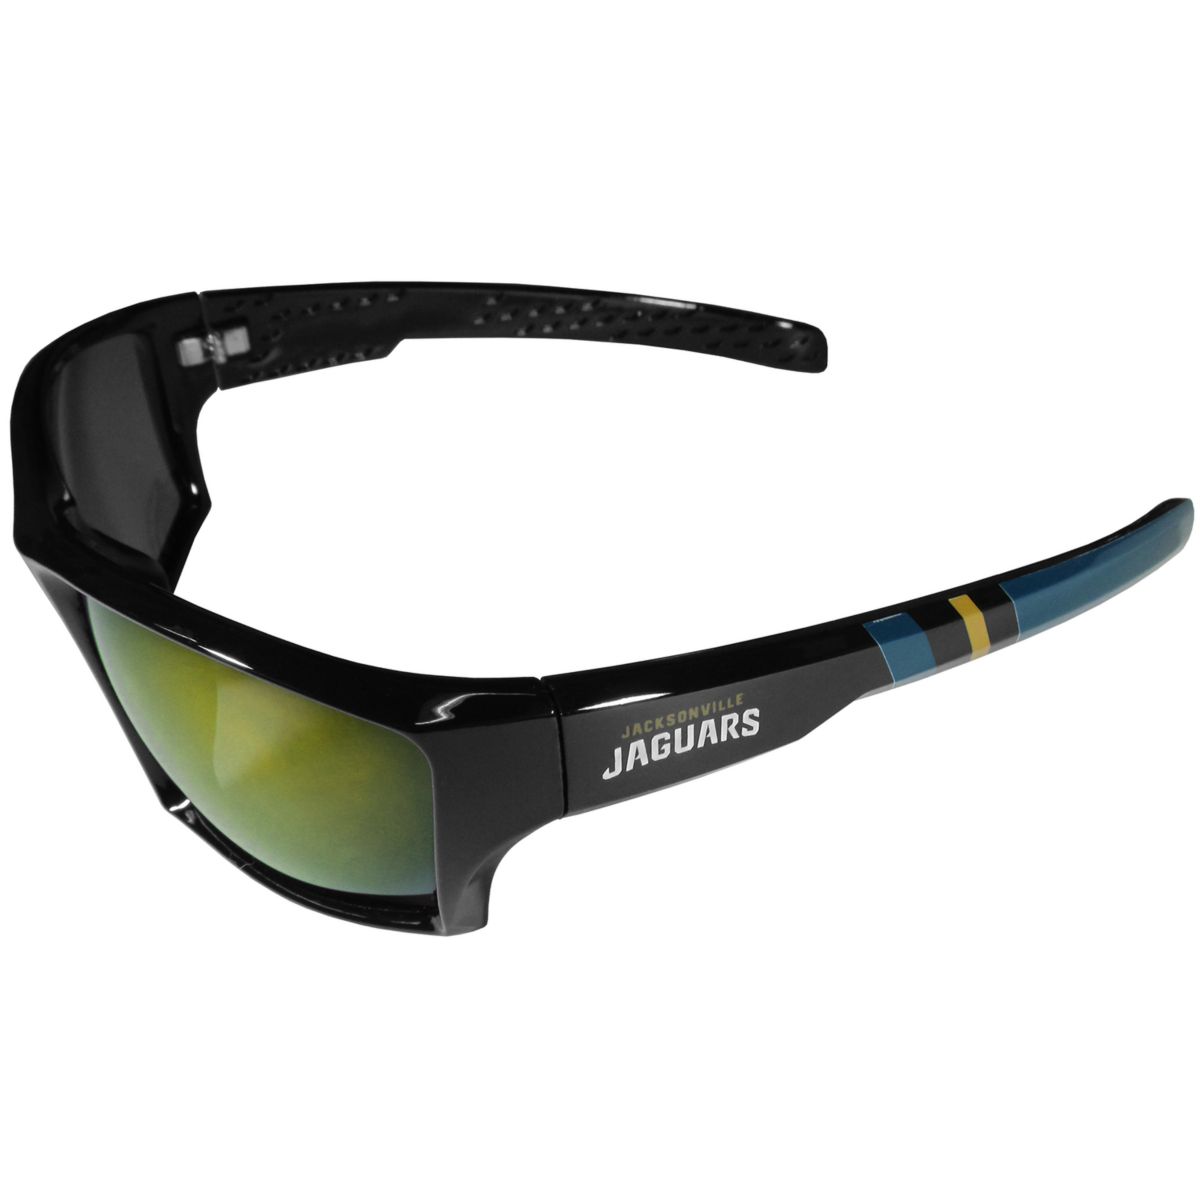 Adult Jacksonville Jaguars Wrap Sunglasses Unbranded